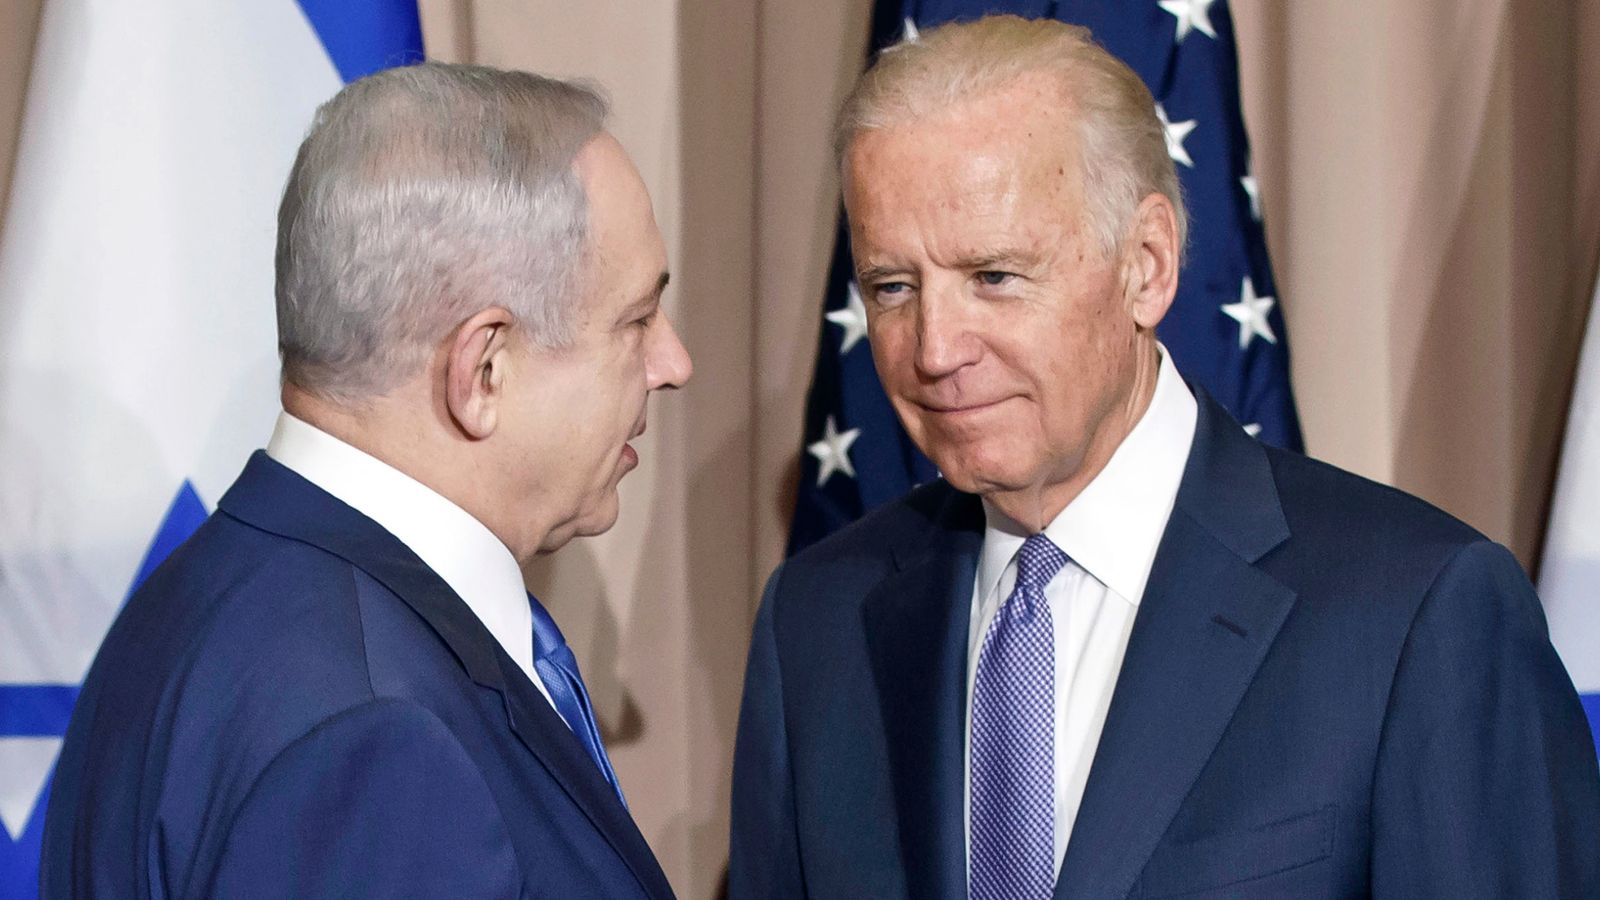 Joe Biden and Benjamin Netanyahu in icy exchange over Israel's controversial judicial reforms